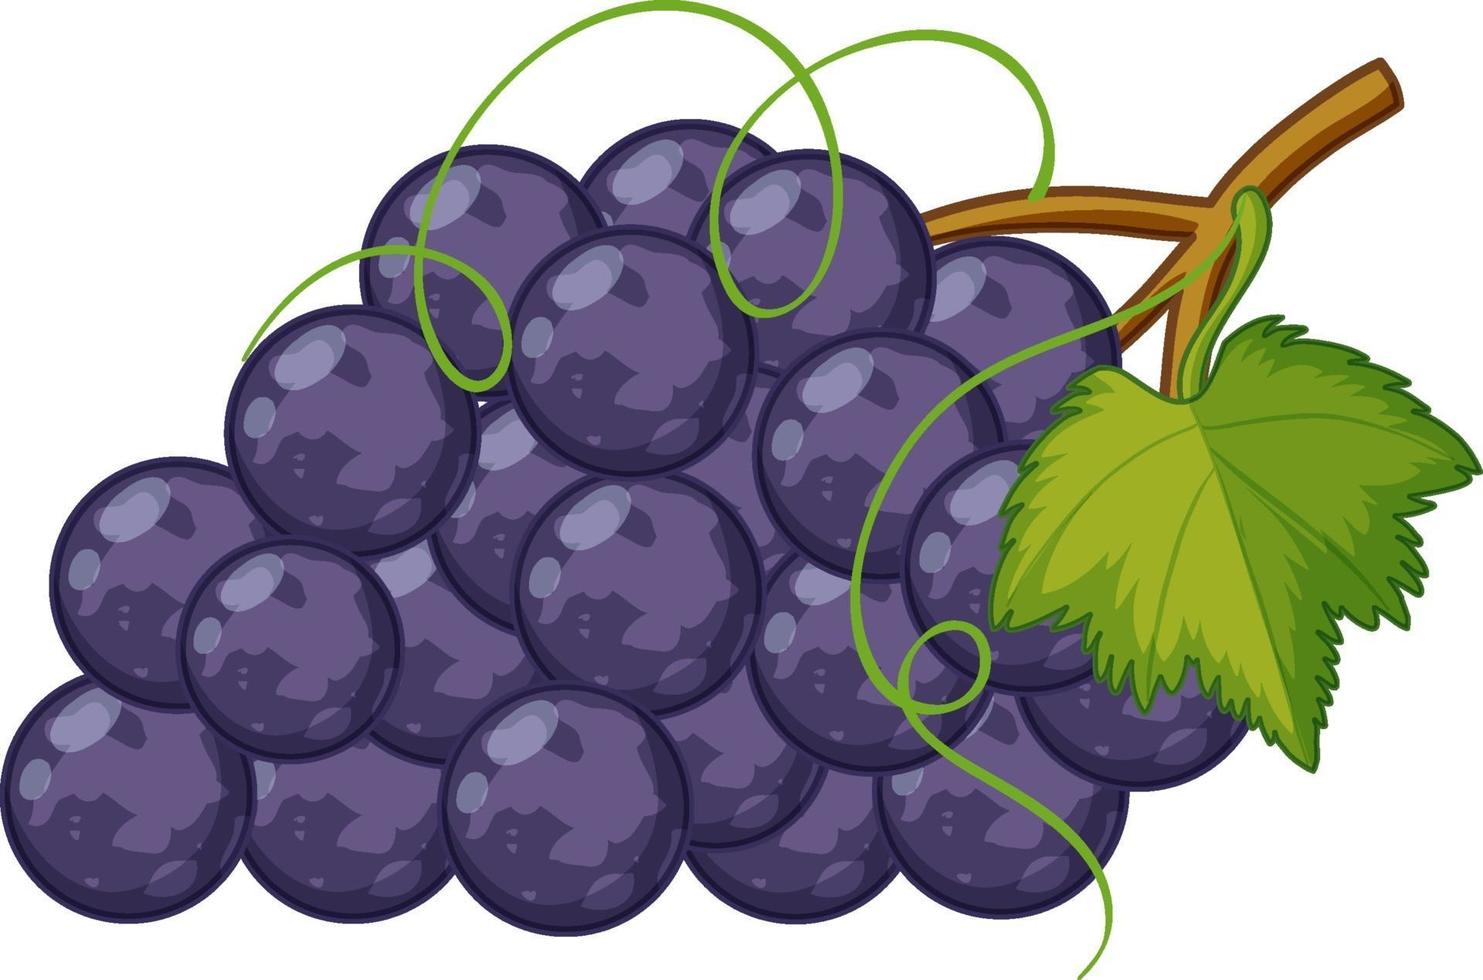 estilo cartoon de uvas roxas isolado no fundo branco vetor